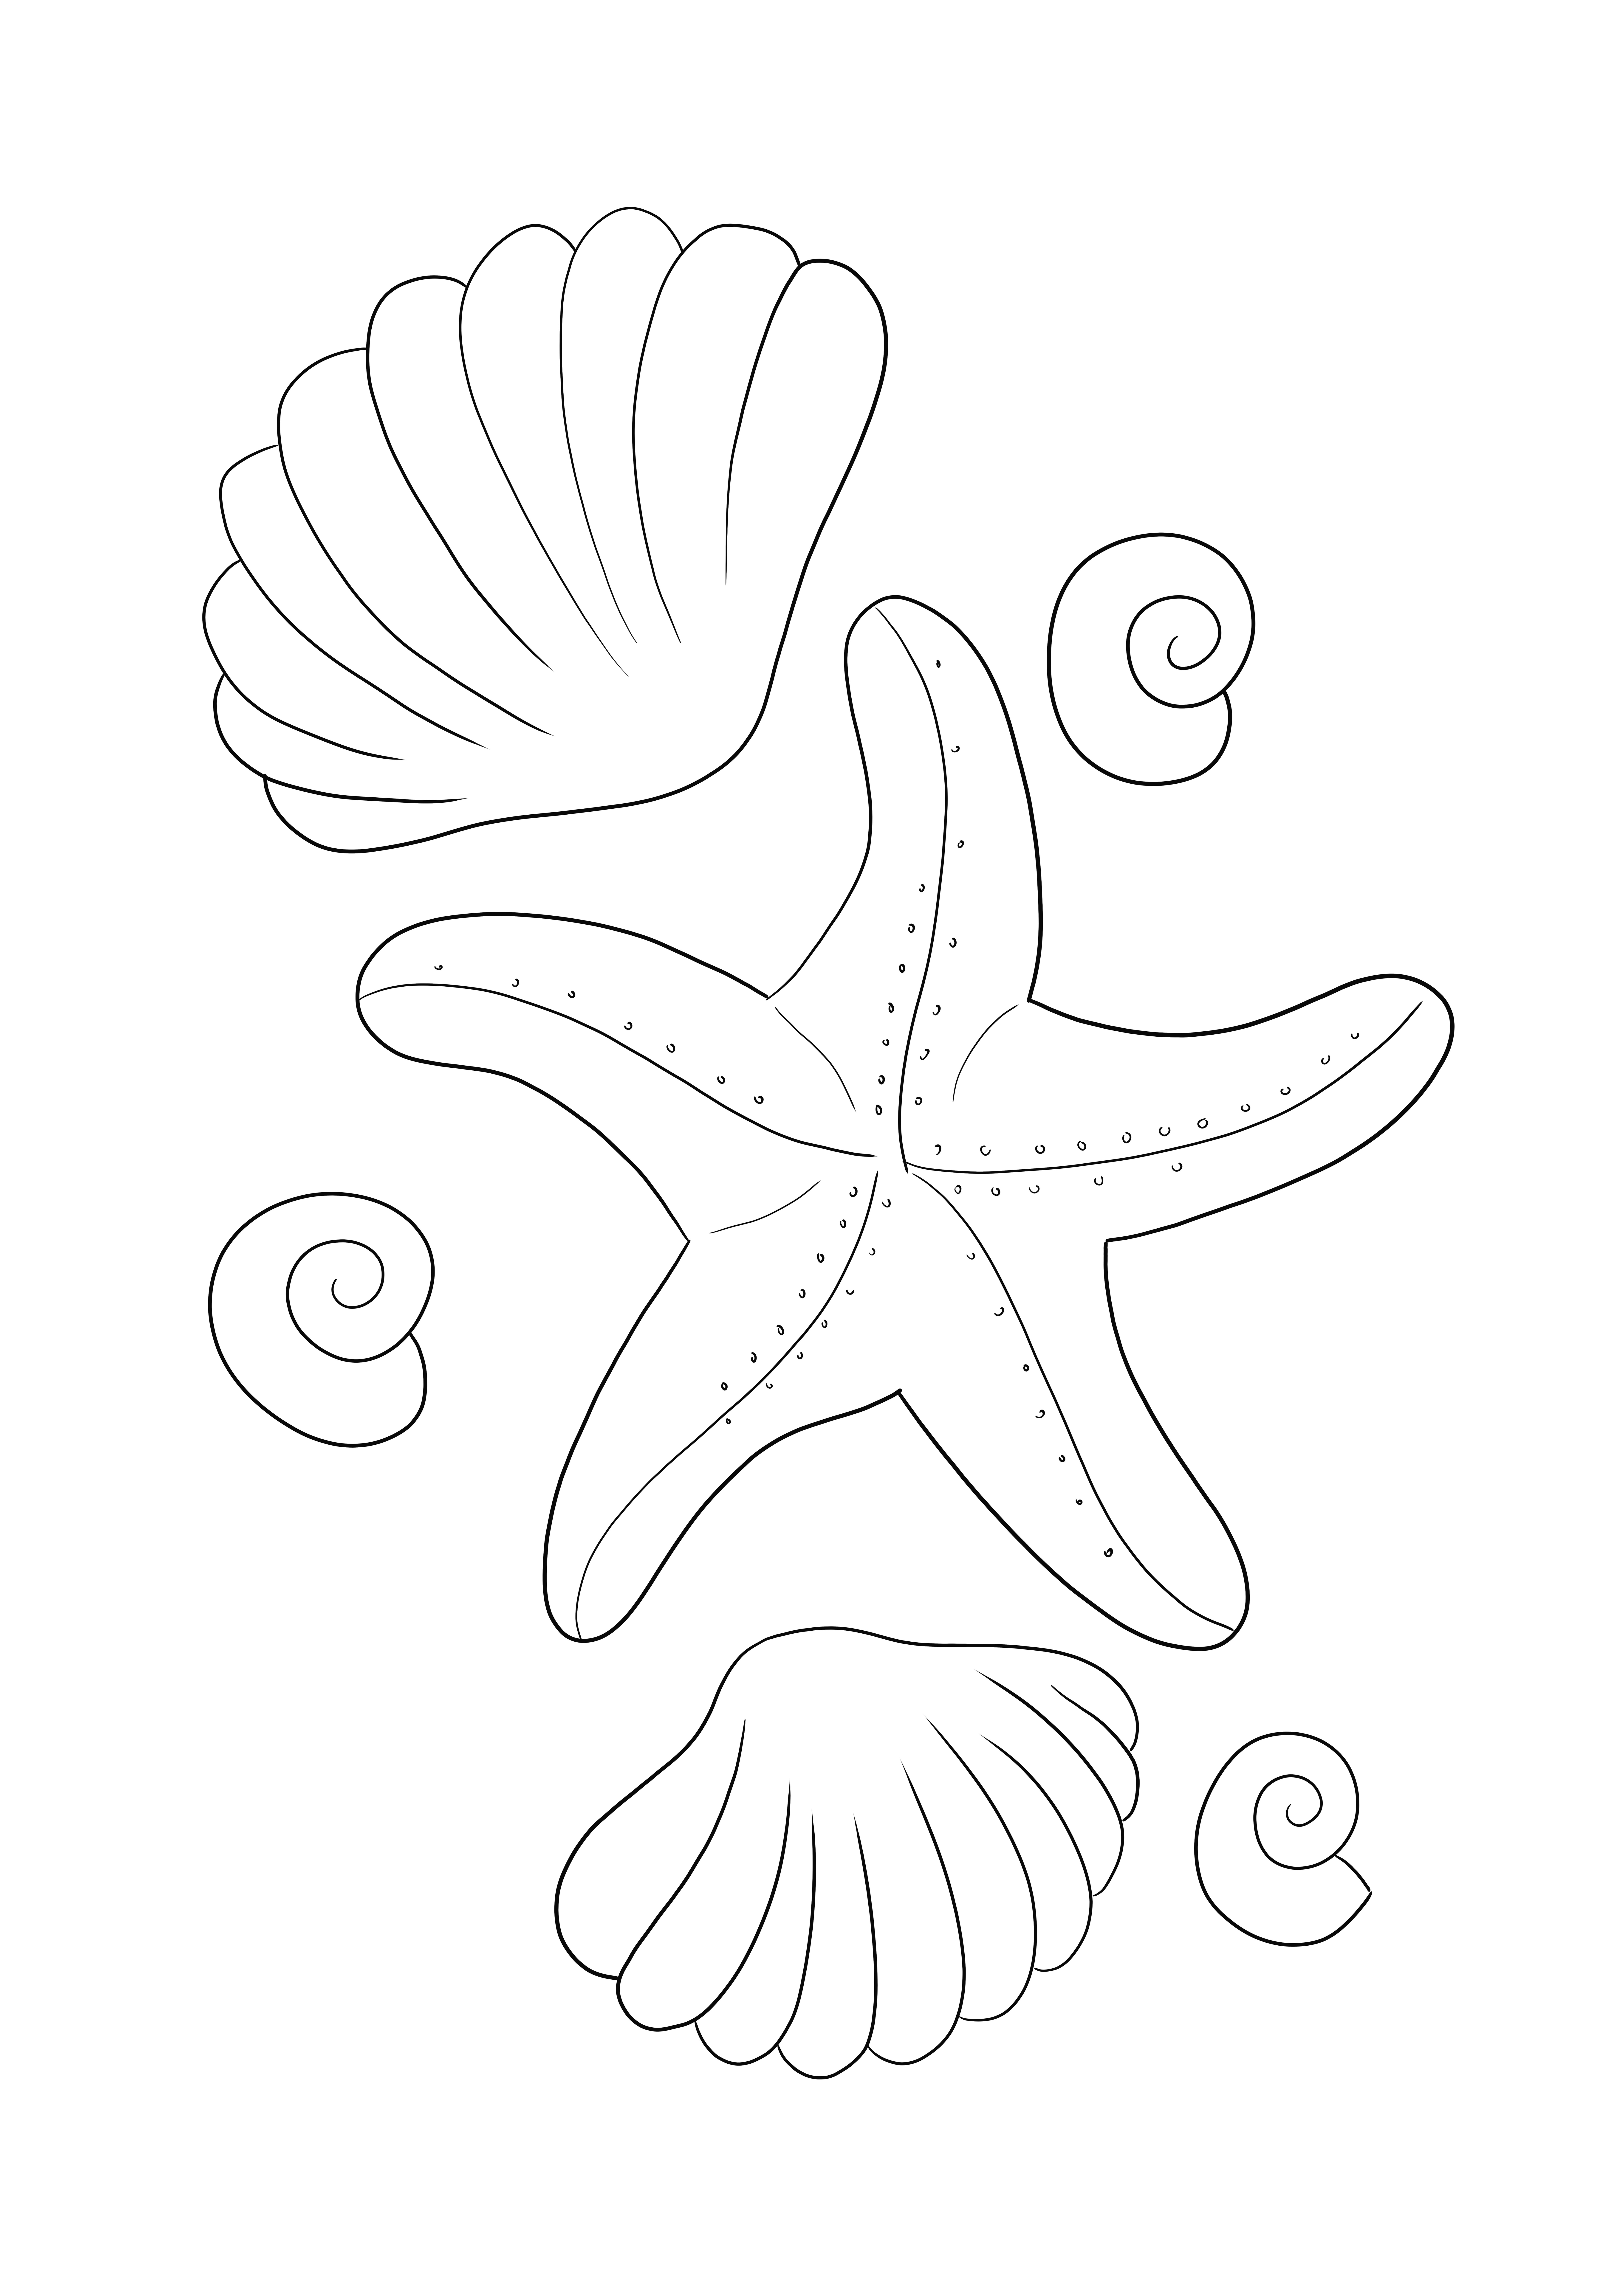 Imagen para colorear de Estrellas de mar y conchas para imprimir y descargar gratis